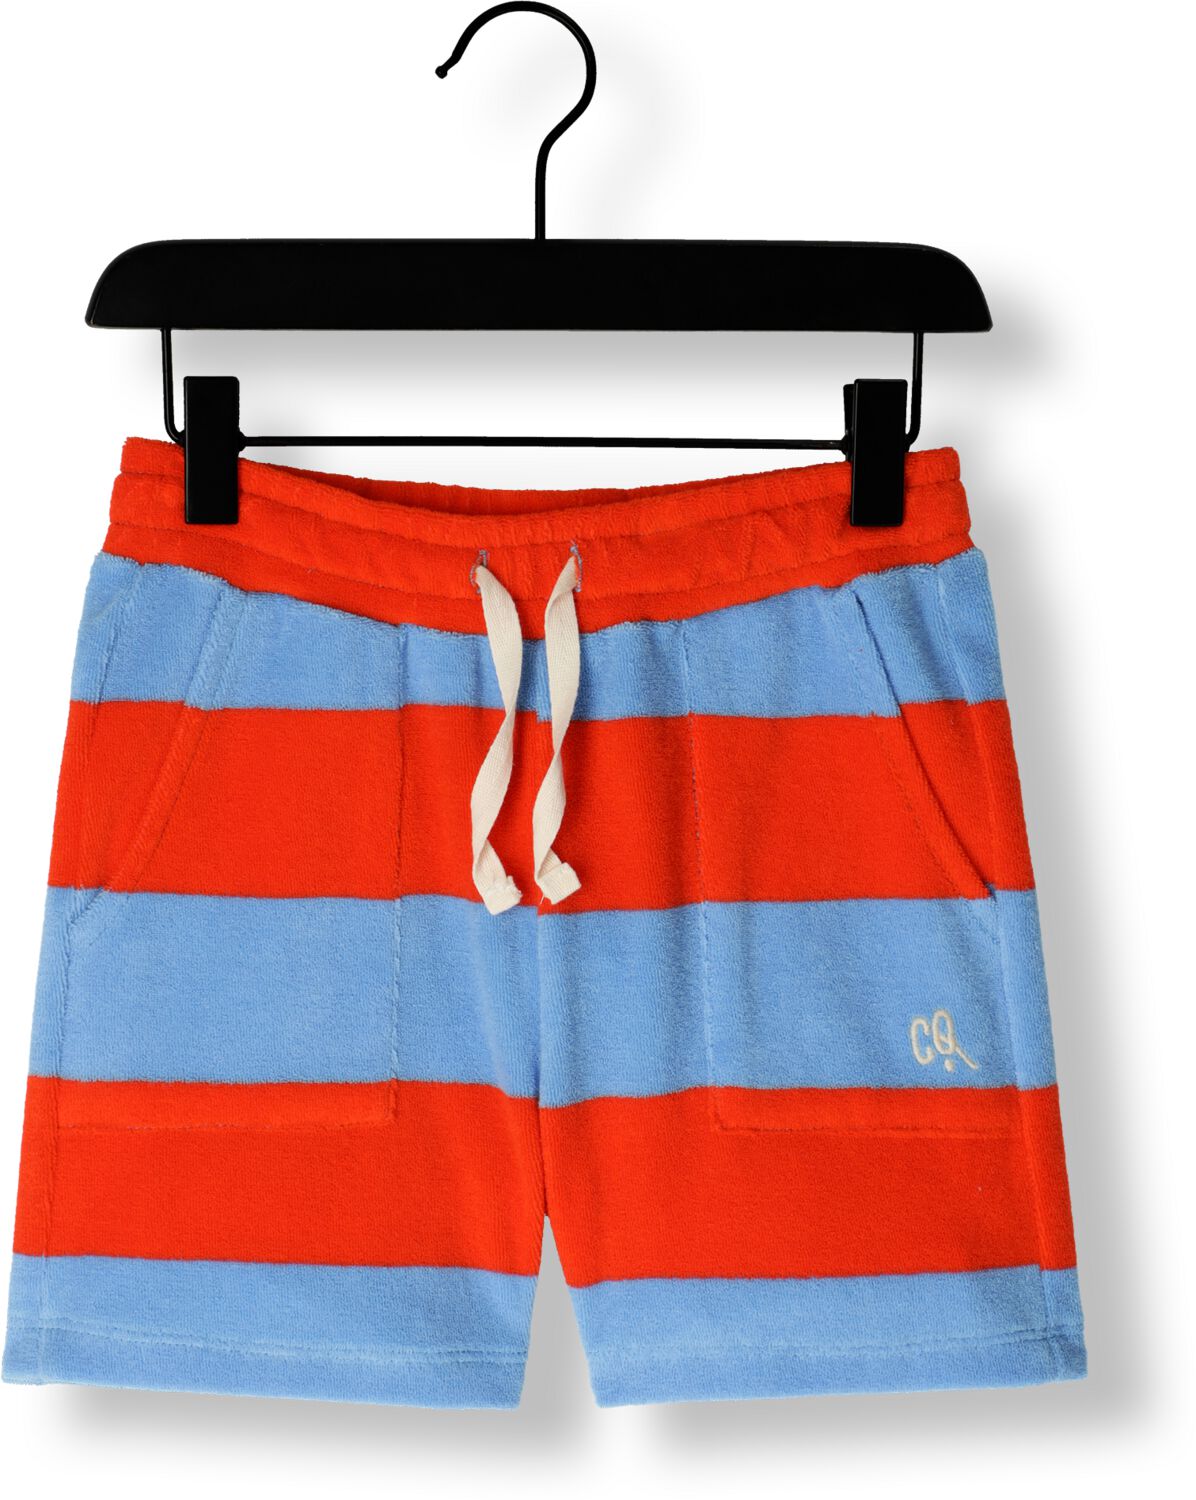 CARLIJNQ Jongens Broeken Stripes Red blue Shorts Loose Fit Blauw